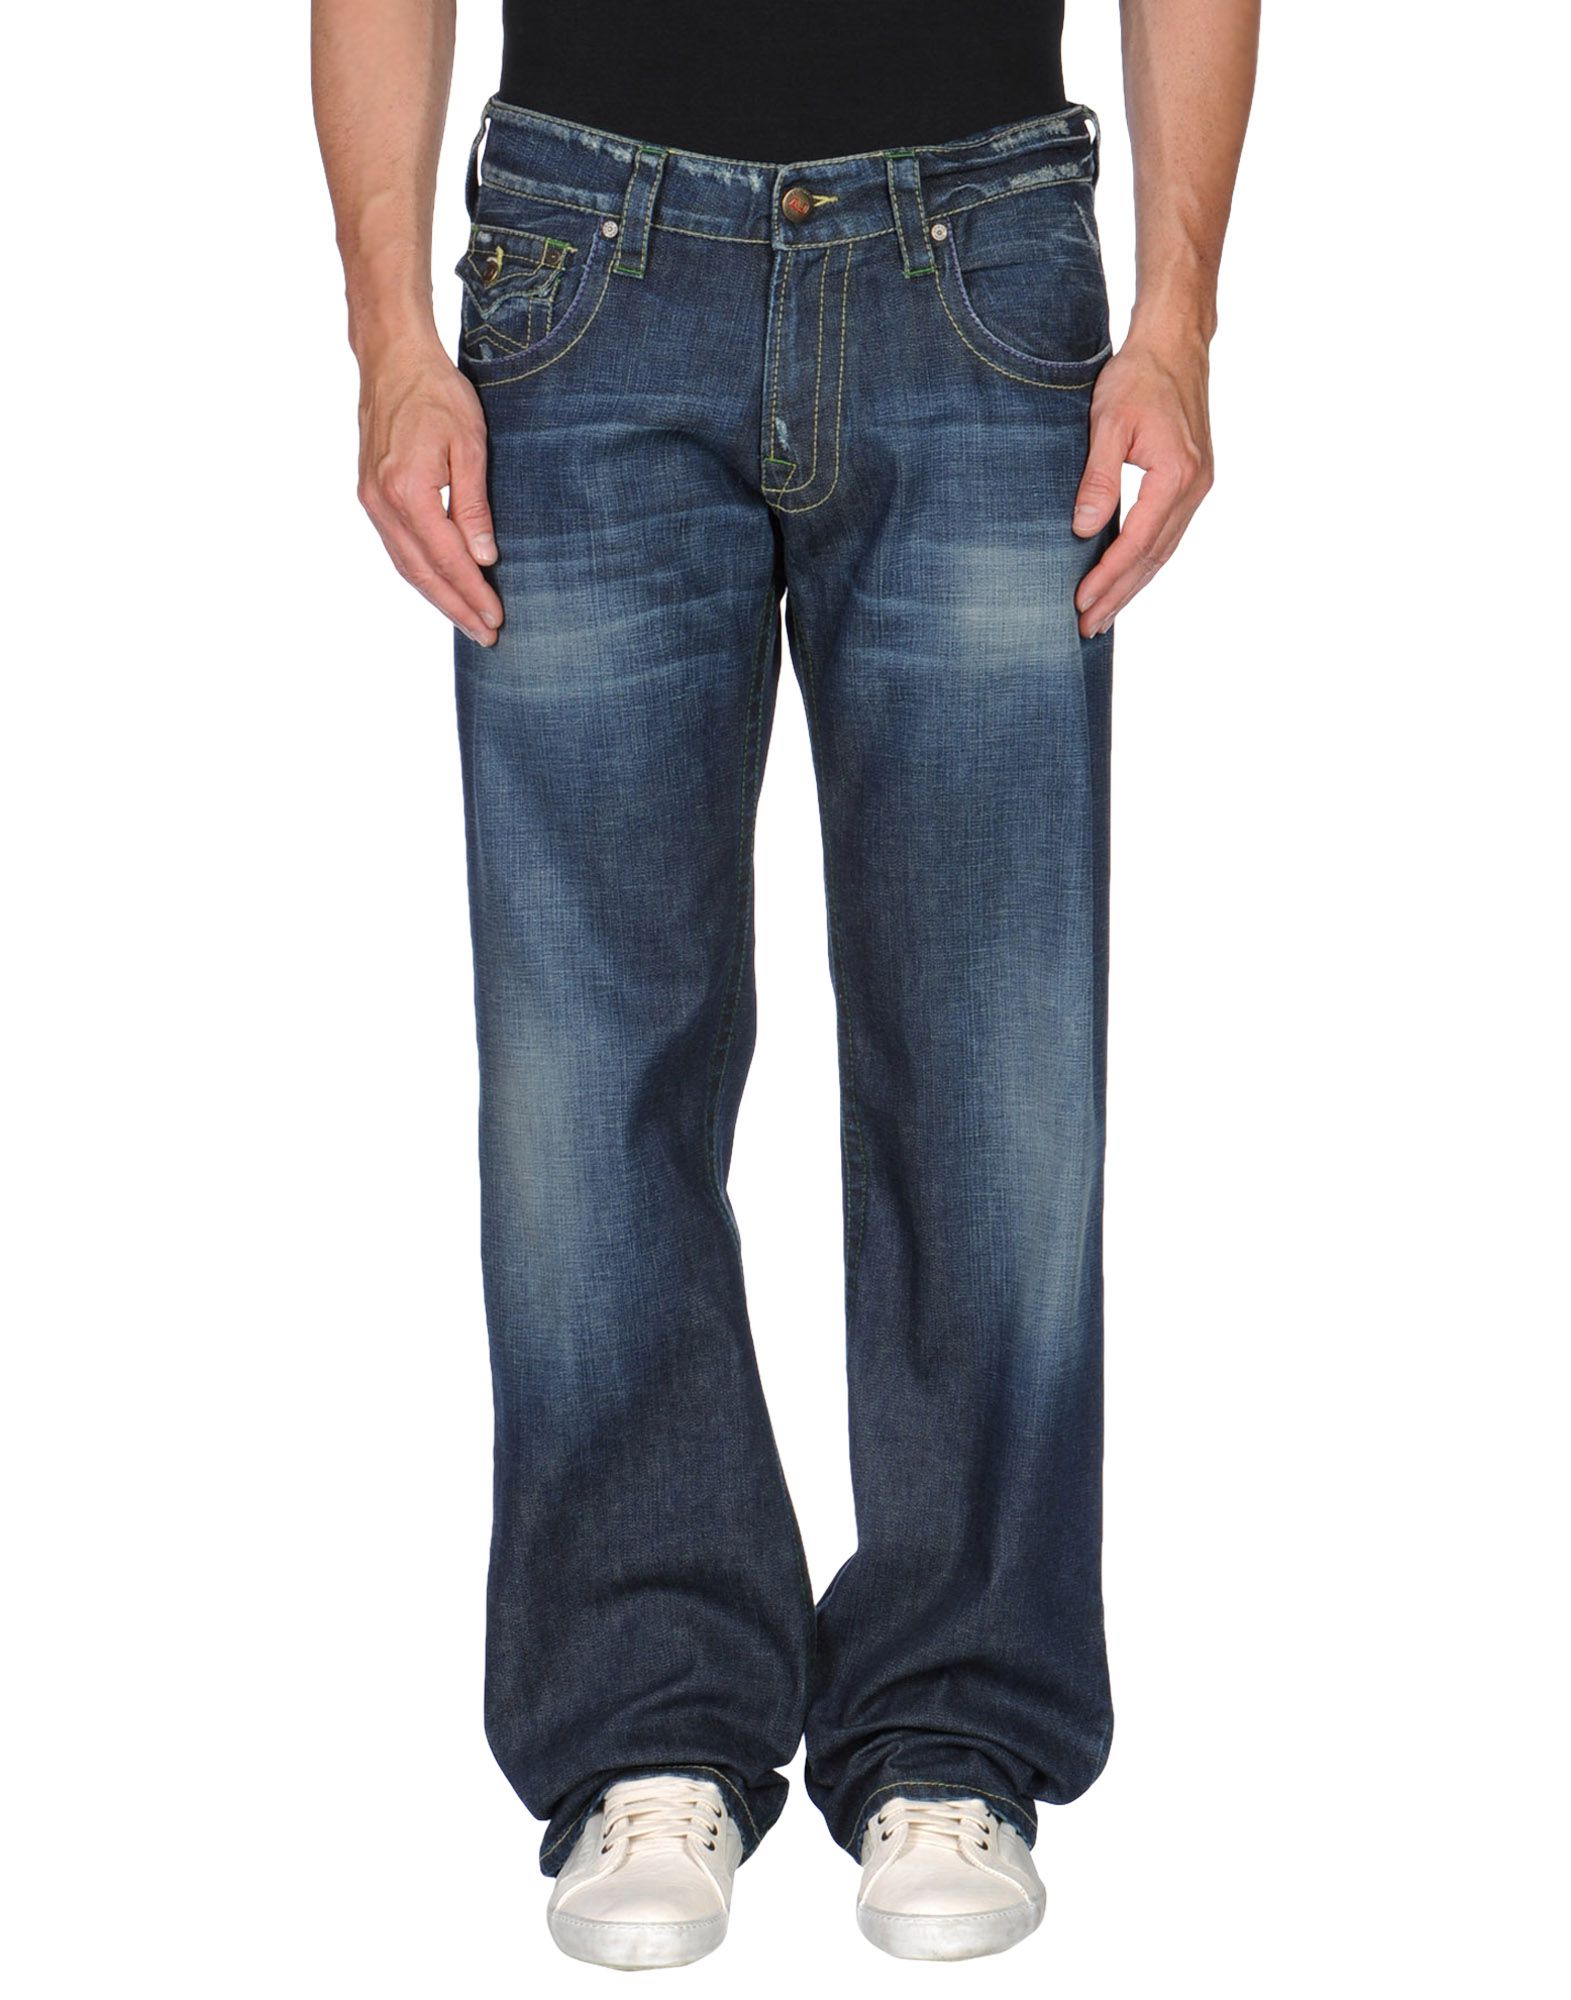 Foto armani jeans pantalones vaqueros Hombre Azul marino